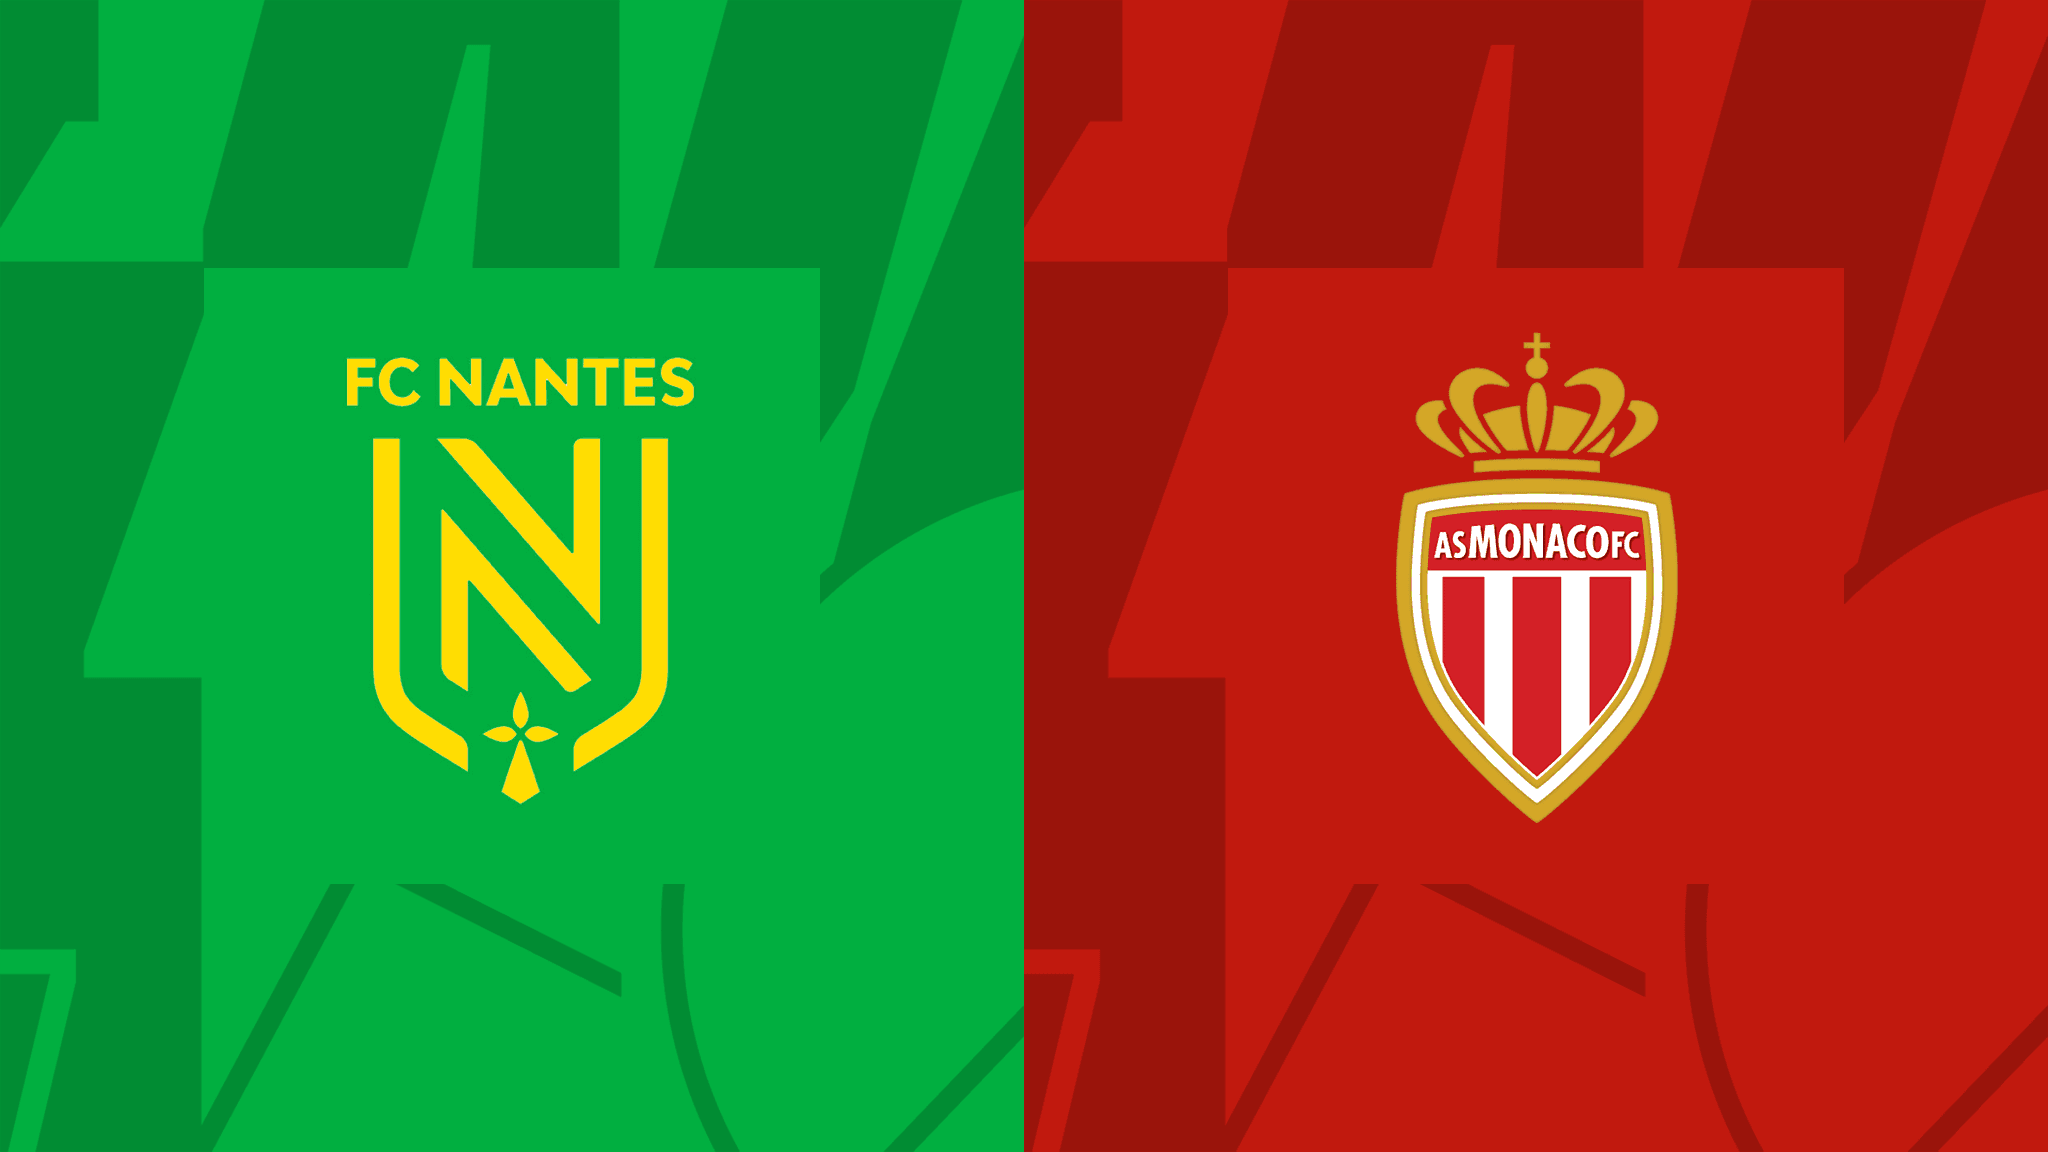 Nantes vs. Monaco